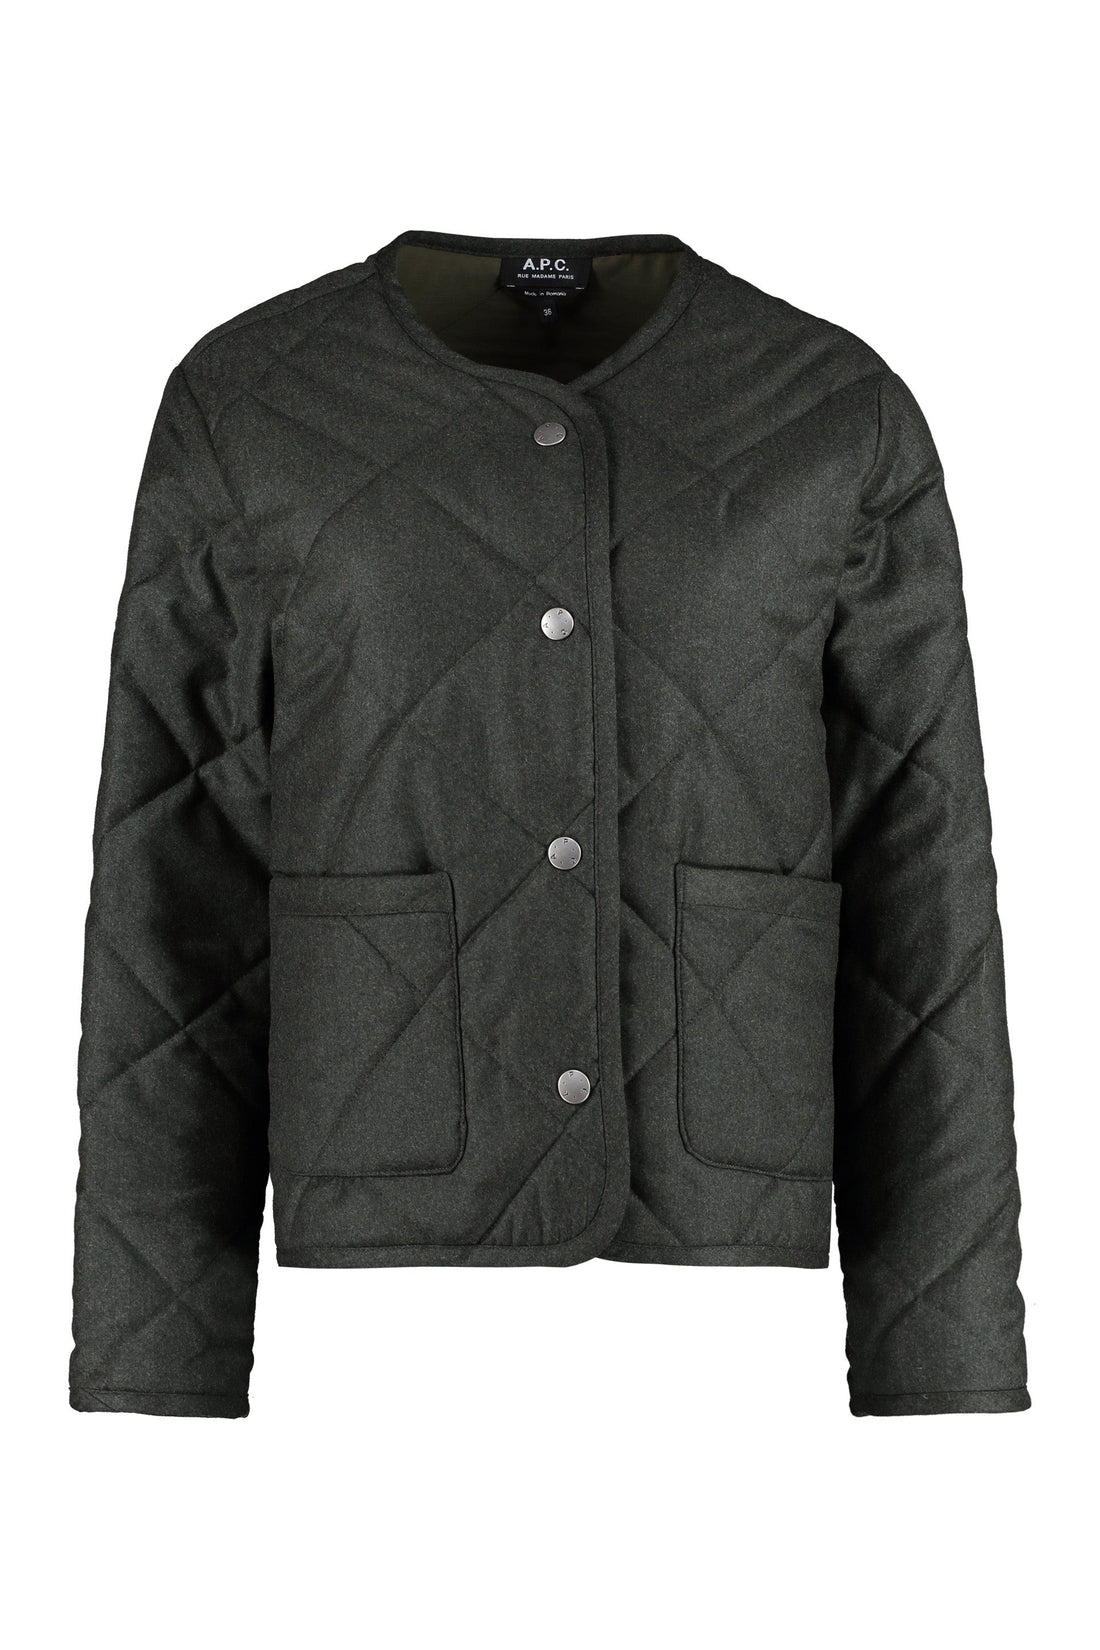 A.P.C.-OUTLET-SALE-Claire quilted jacket-ARCHIVIST